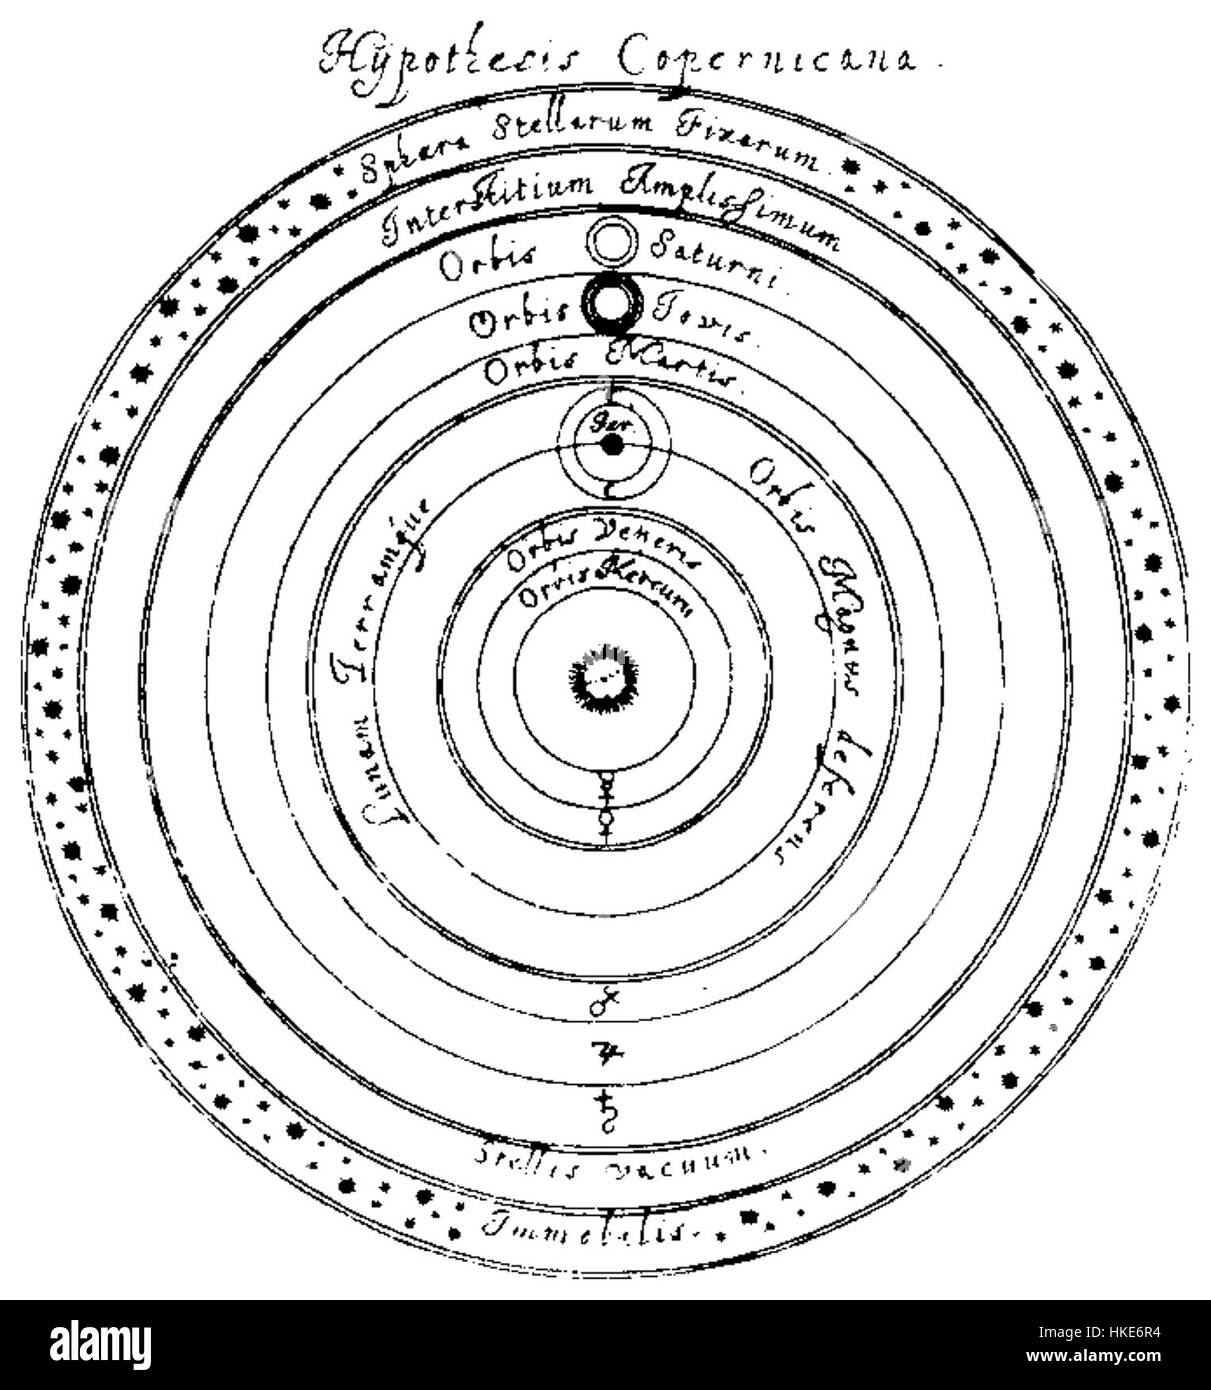 Hypothesis Copernicana Stock Photo